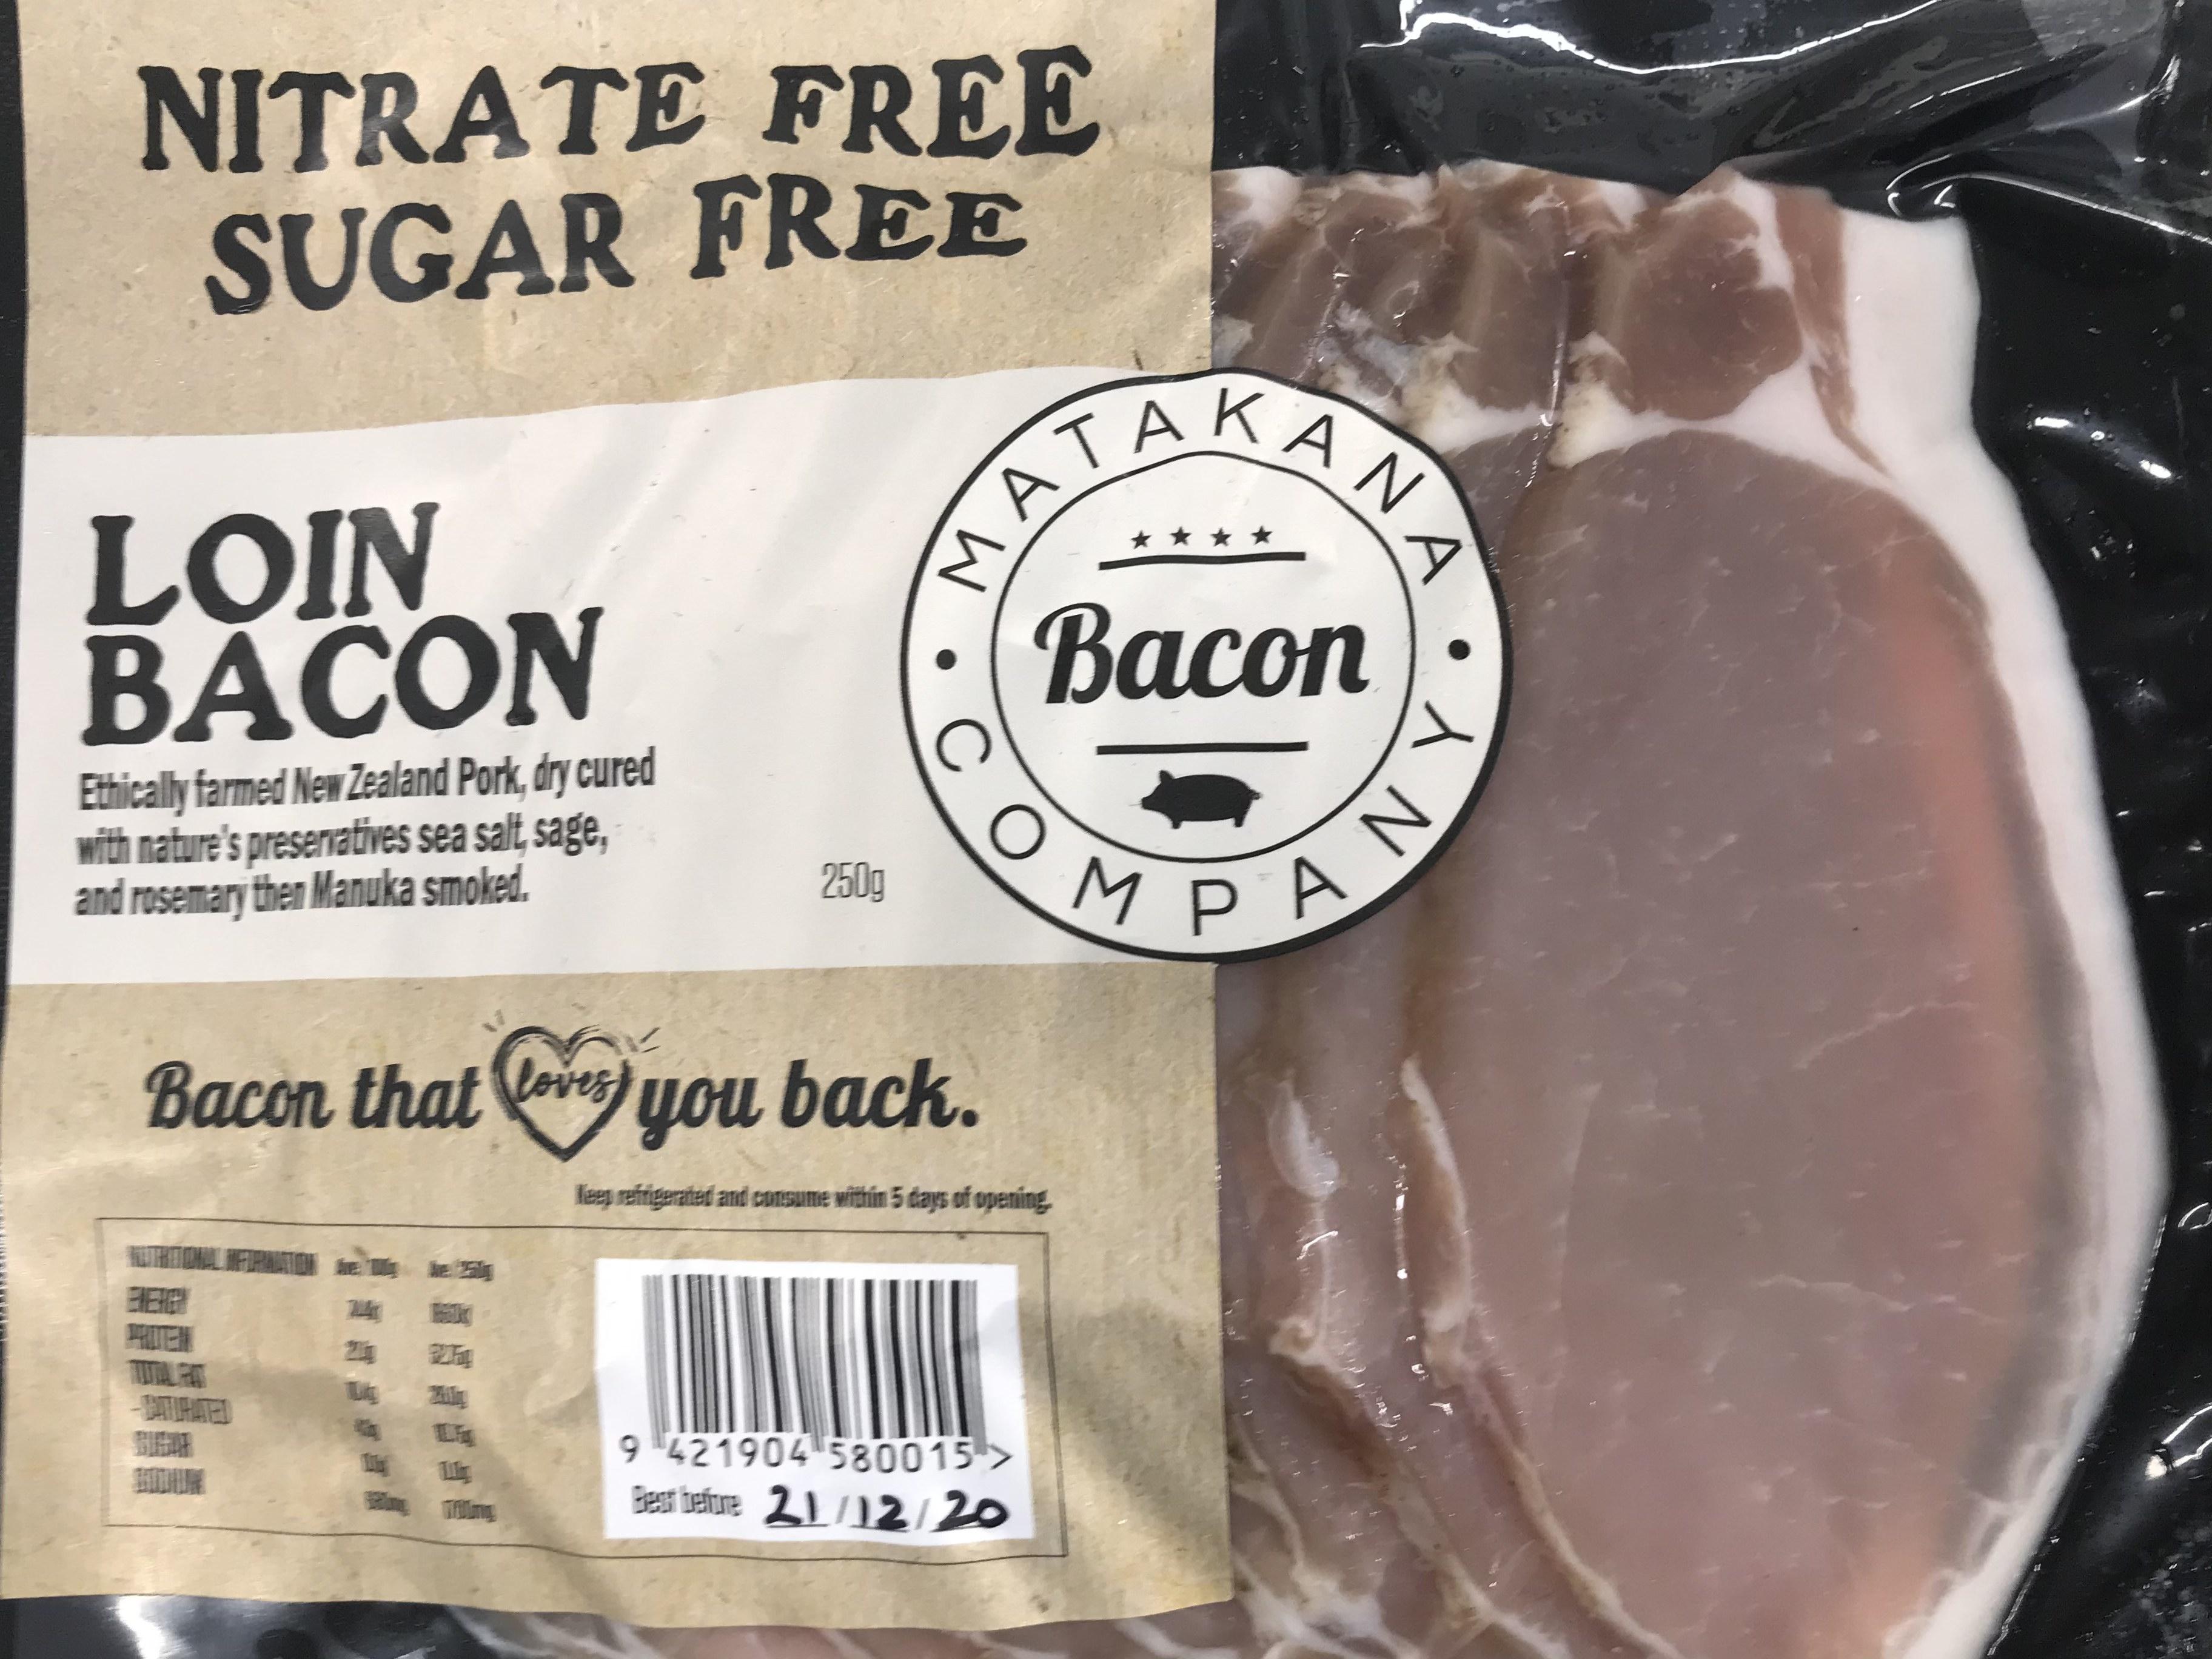 product image for Matakana Bacon Company - Loin Bacon